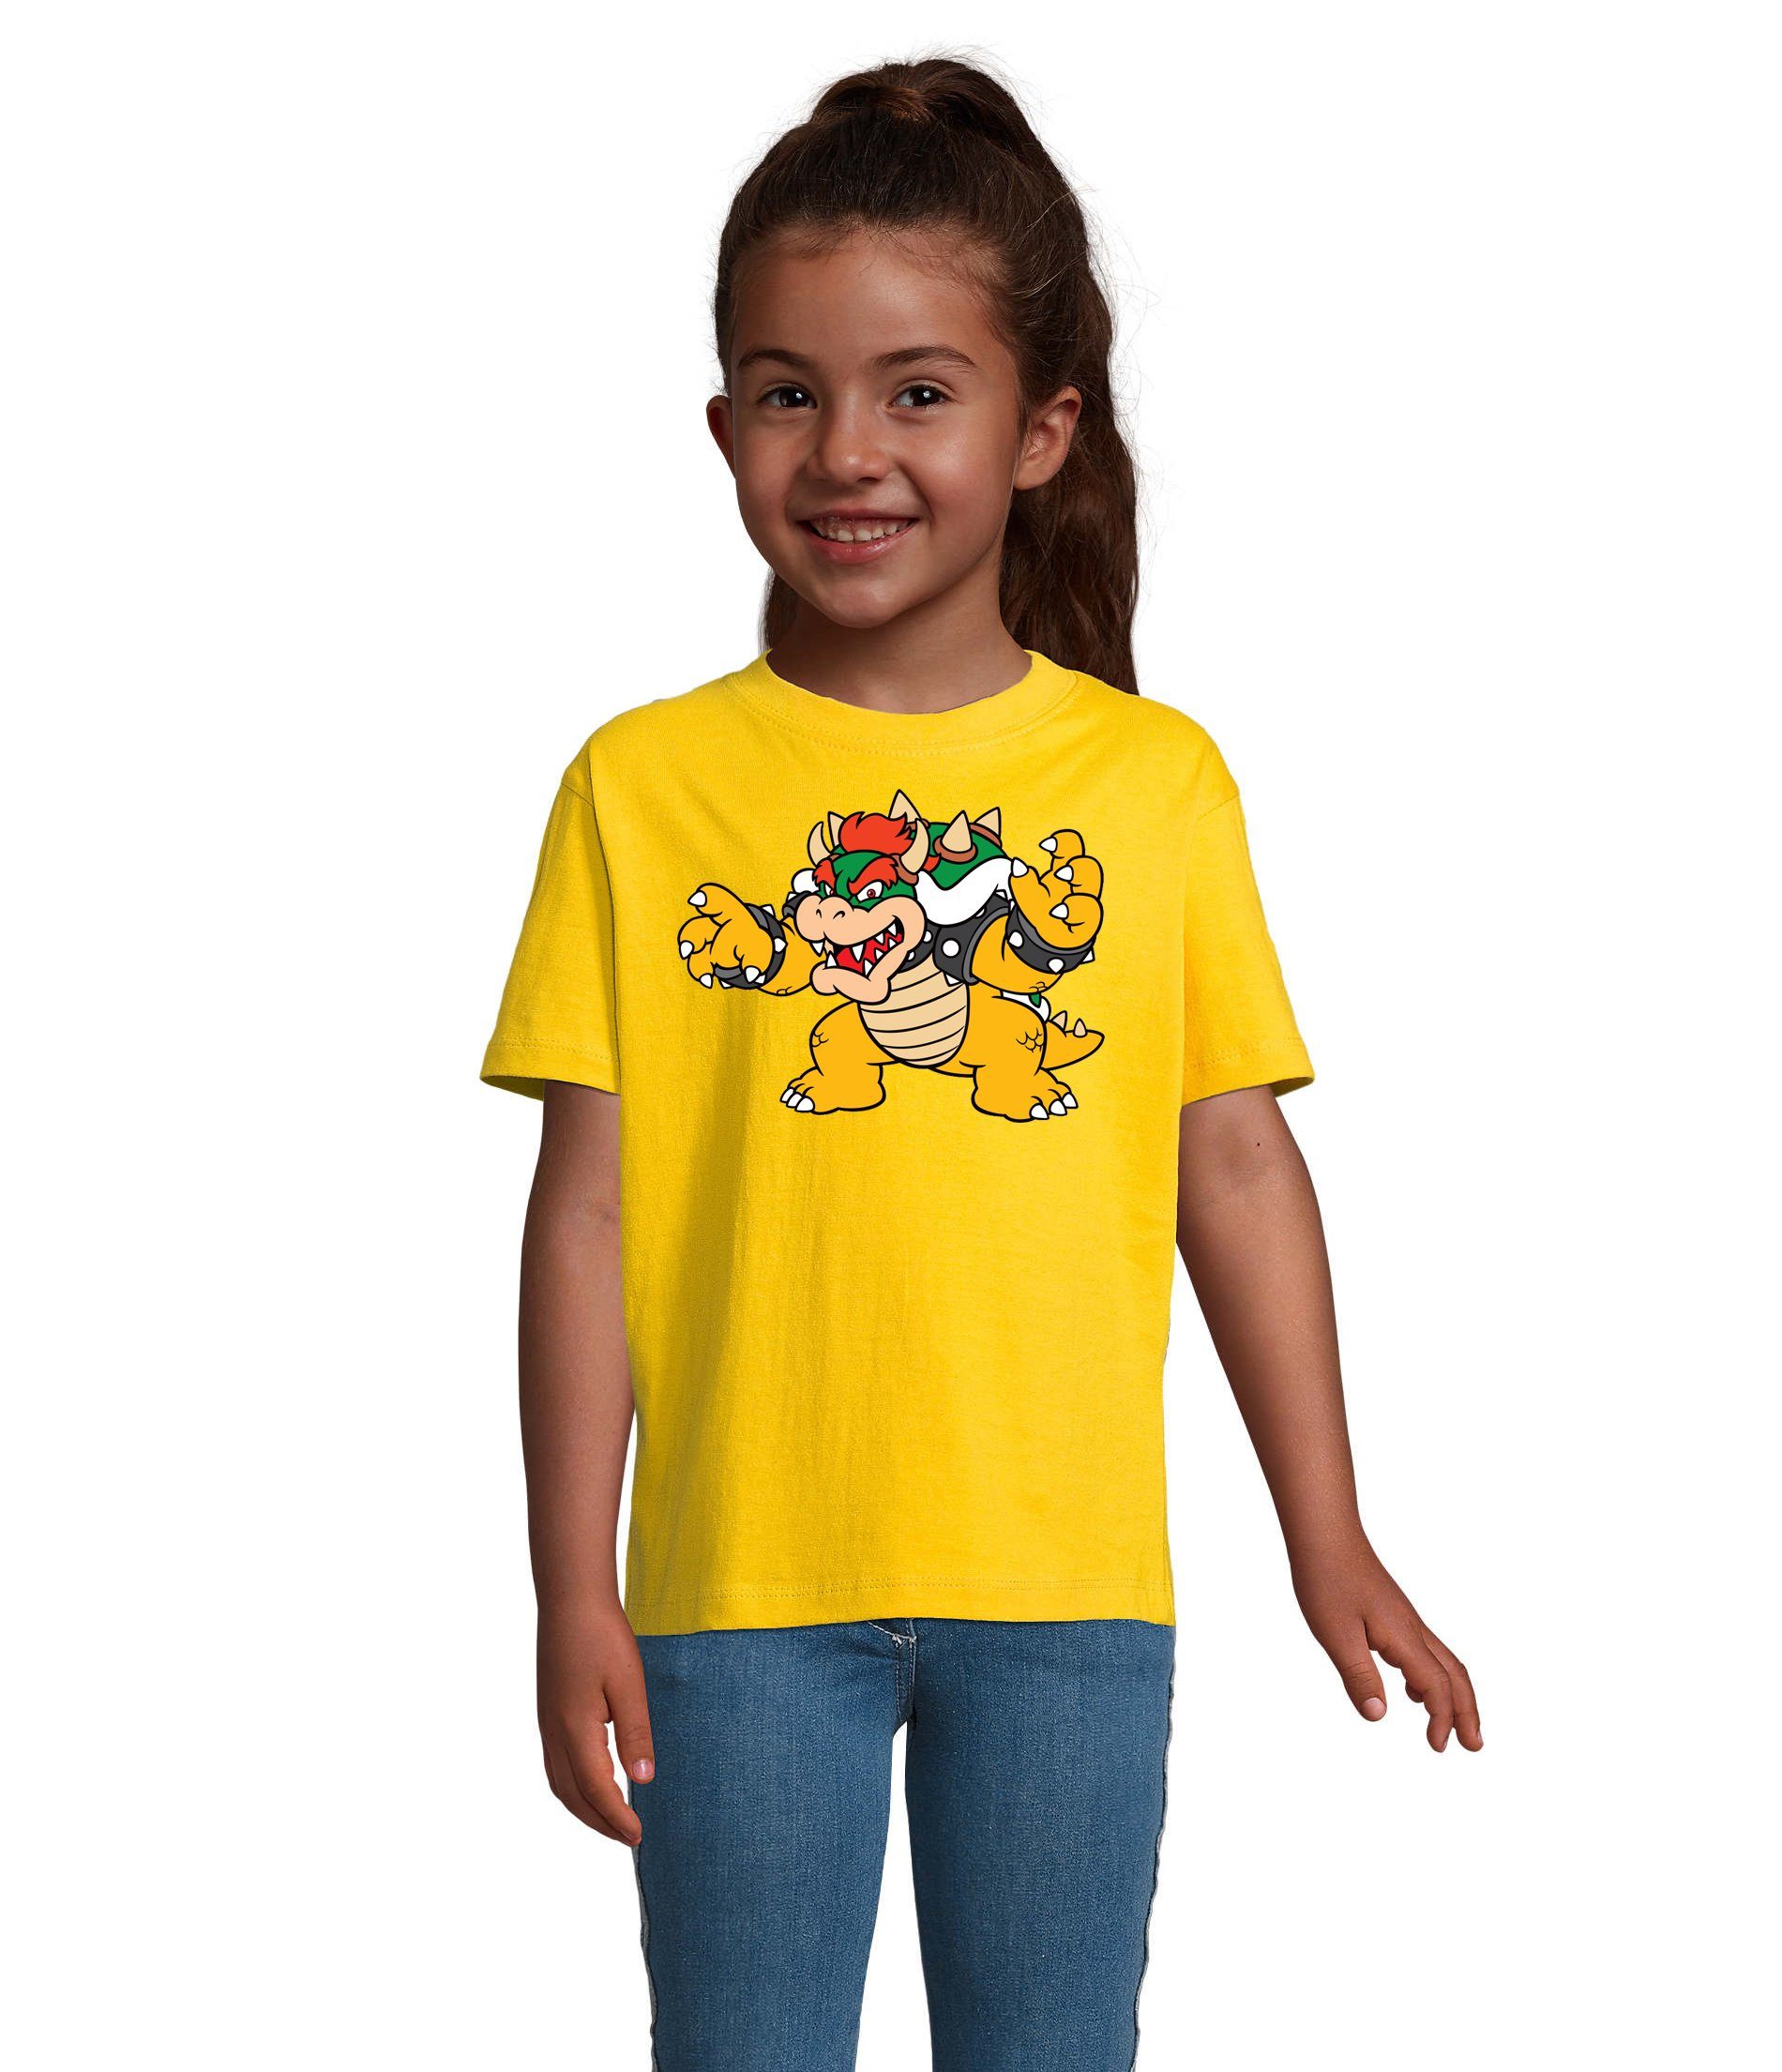 Blondie & Brownie T-Shirt Kinder Bowser Nintendo Mario Yoshi Luigi Game Gamer Konsole Gelb